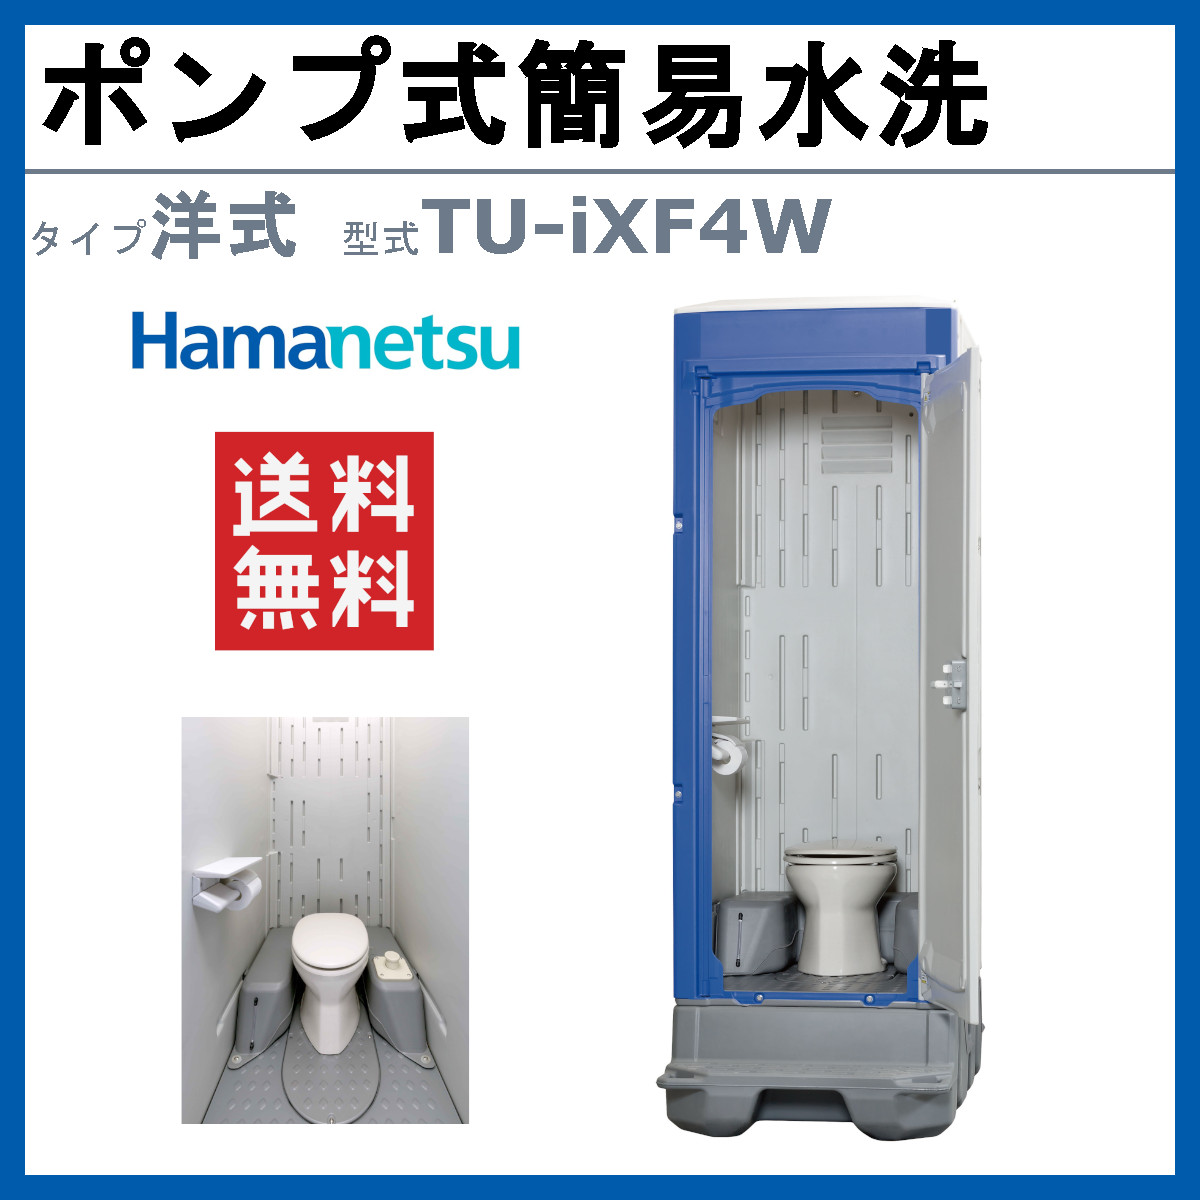 ハマネツ 仮設トイレ ポンプ式簡易水洗 TU-iXF4W イクスシリーズ 洋式 